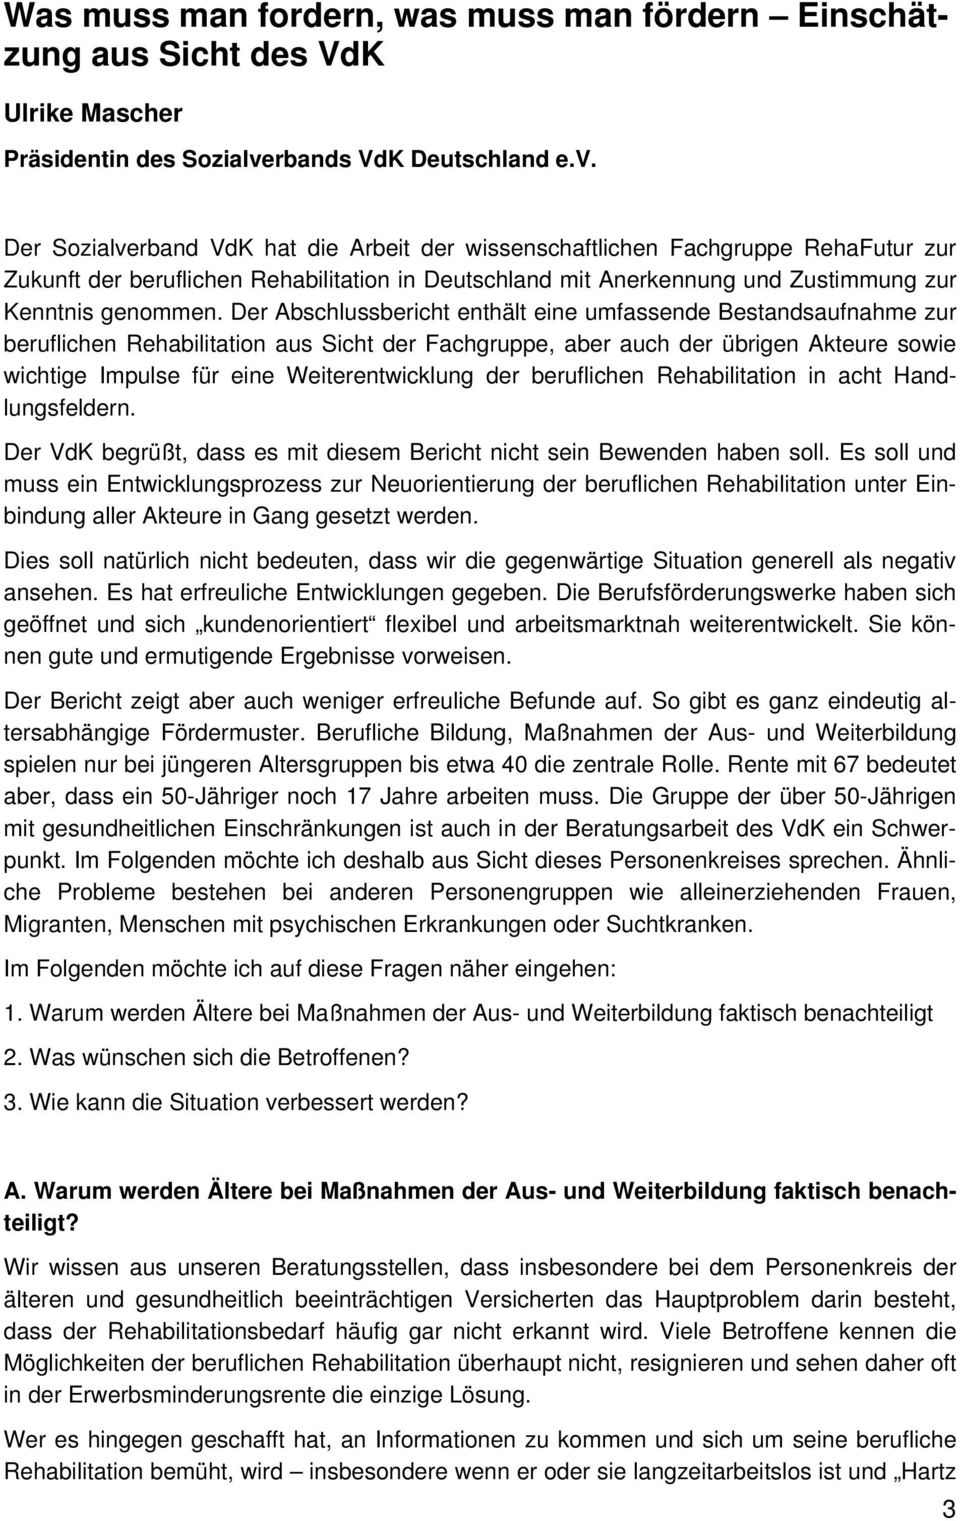 Der Sozialverband VdK hat die Arbeit der wissenschaftlichen Fachgruppe RehaFutur zur Zukunft der beruflichen Rehabilitation in Deutschland mit Anerkennung und Zustimmung zur Kenntnis genommen.